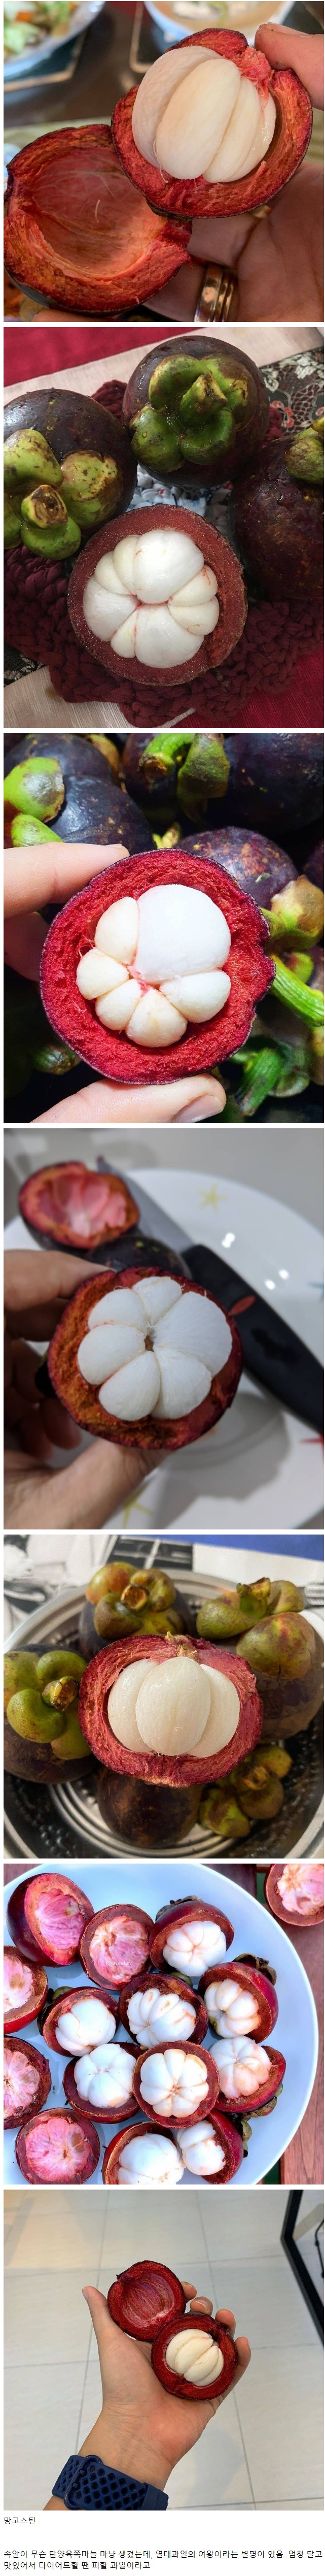 한국에서 인기 없는 과일